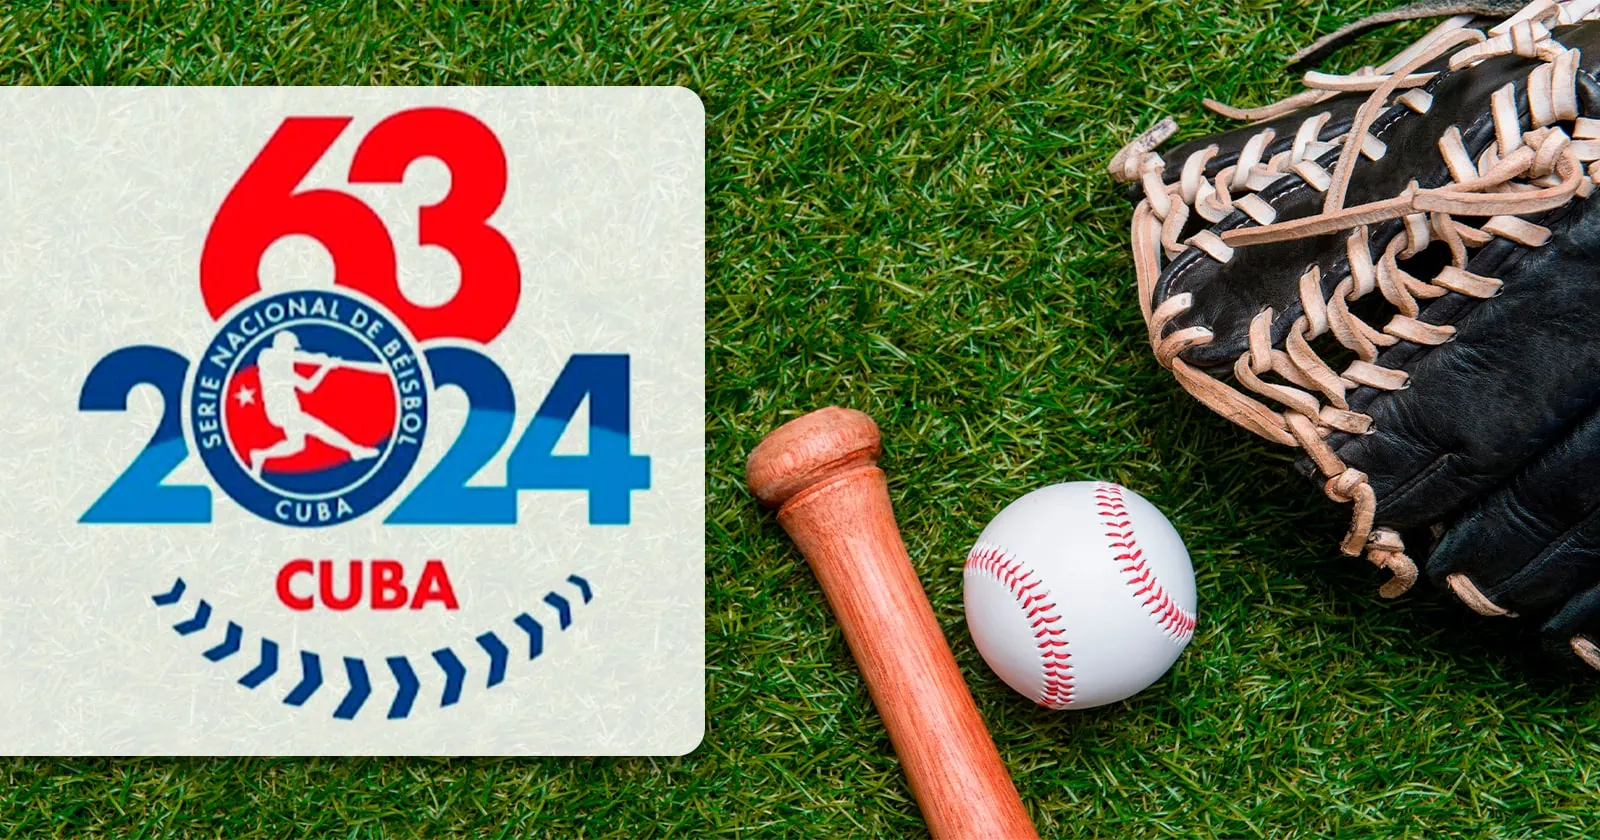 Cambia Horario de Juegos de la 63 Serie Nacional de Beisbol: Mira qué Sucede